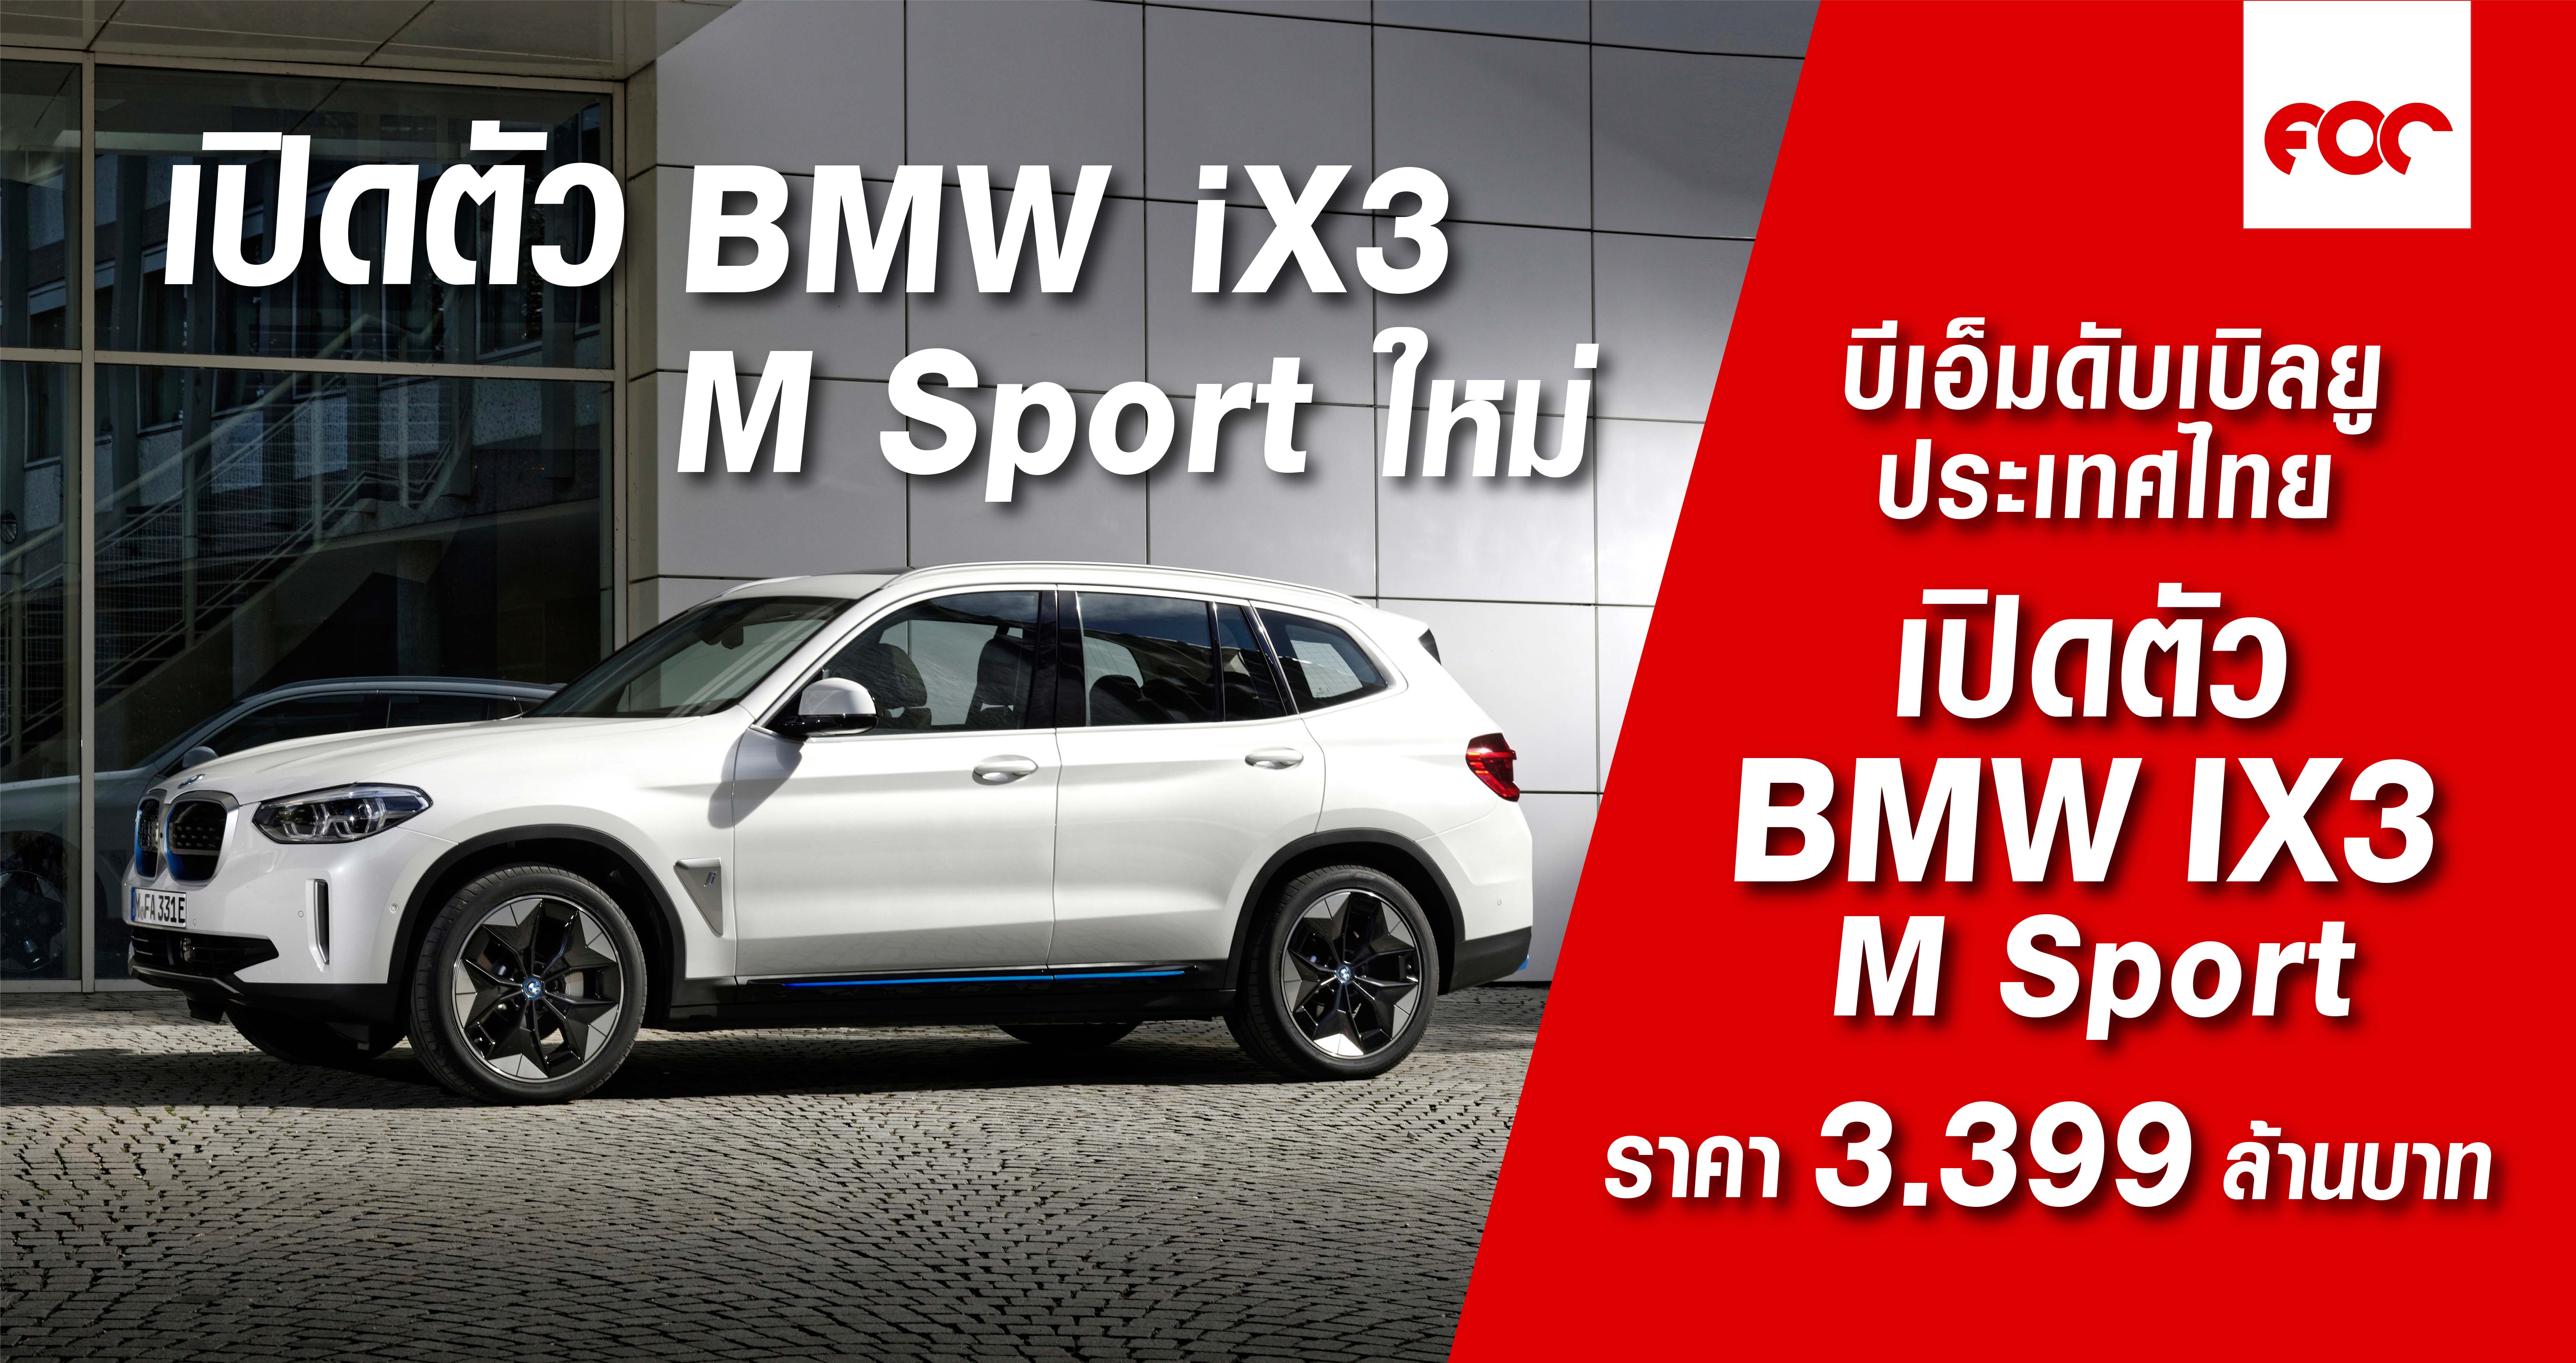 บีเอ็มดับเบิลยู iX3 M Sport ใหม่ ราคาจำหน่าย: 3,399,000 บาท (รวมภาษีมูลค่าเพิ่ม แพ็คเกจบำรุงรักษา BSI Standard  นาน 4 ปี และแท่นชาร์จ BMW i Wallbox จำนวนจำกัด)